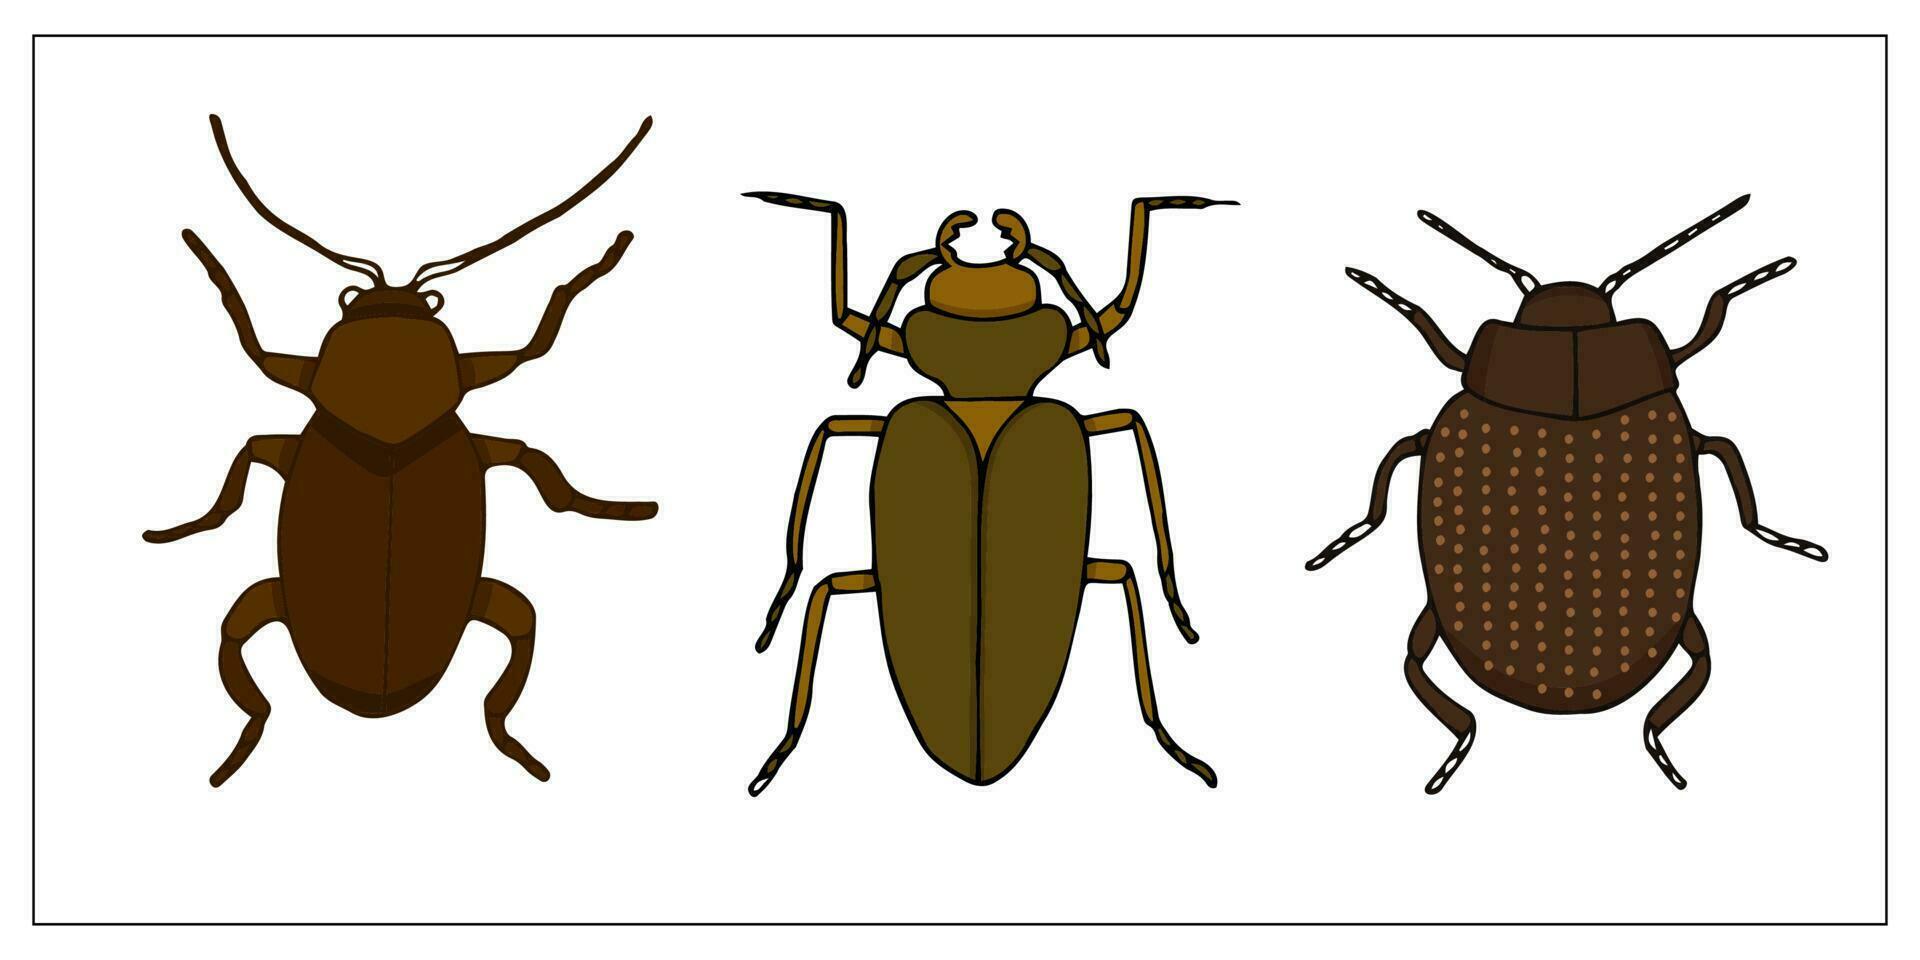 besouros e insetos. conjunto do desenhado à mão rabisco ilustração do insetos. assustador e realista insetos. helloween decoração. vetor